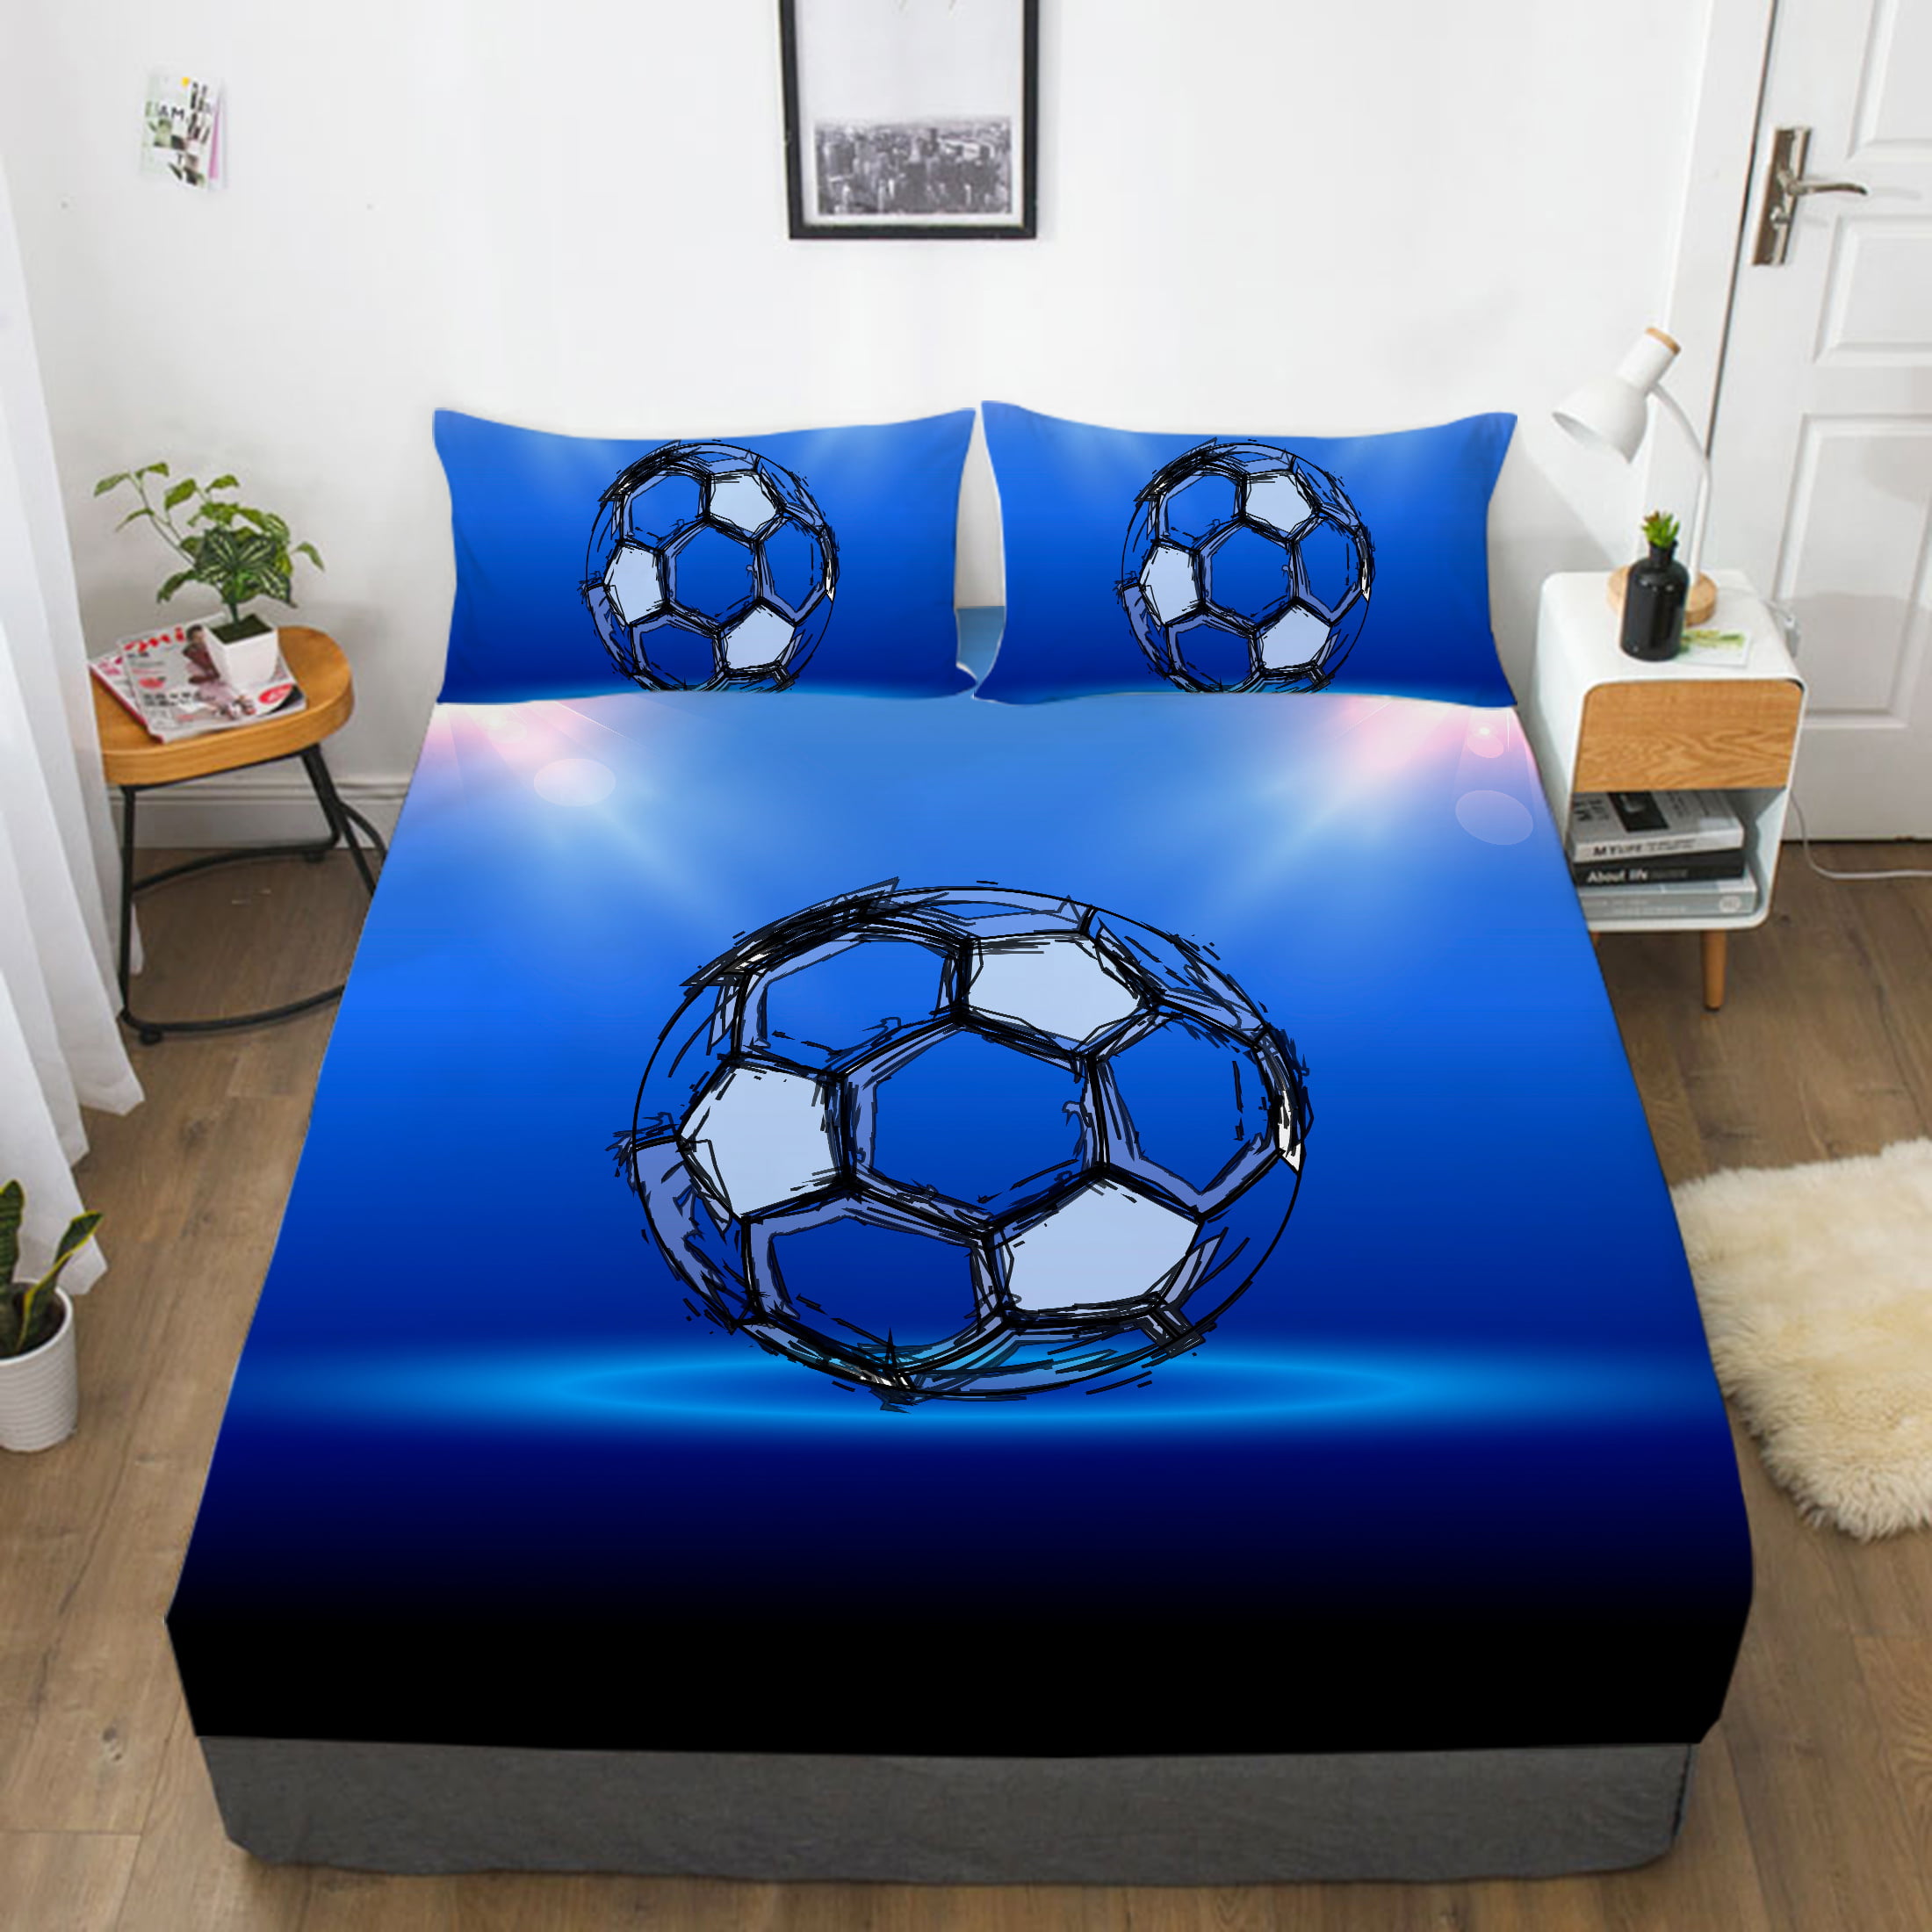 Cartoon Bedsheet Football Bed Cover 3D Sport Fitted Sheet Home ...